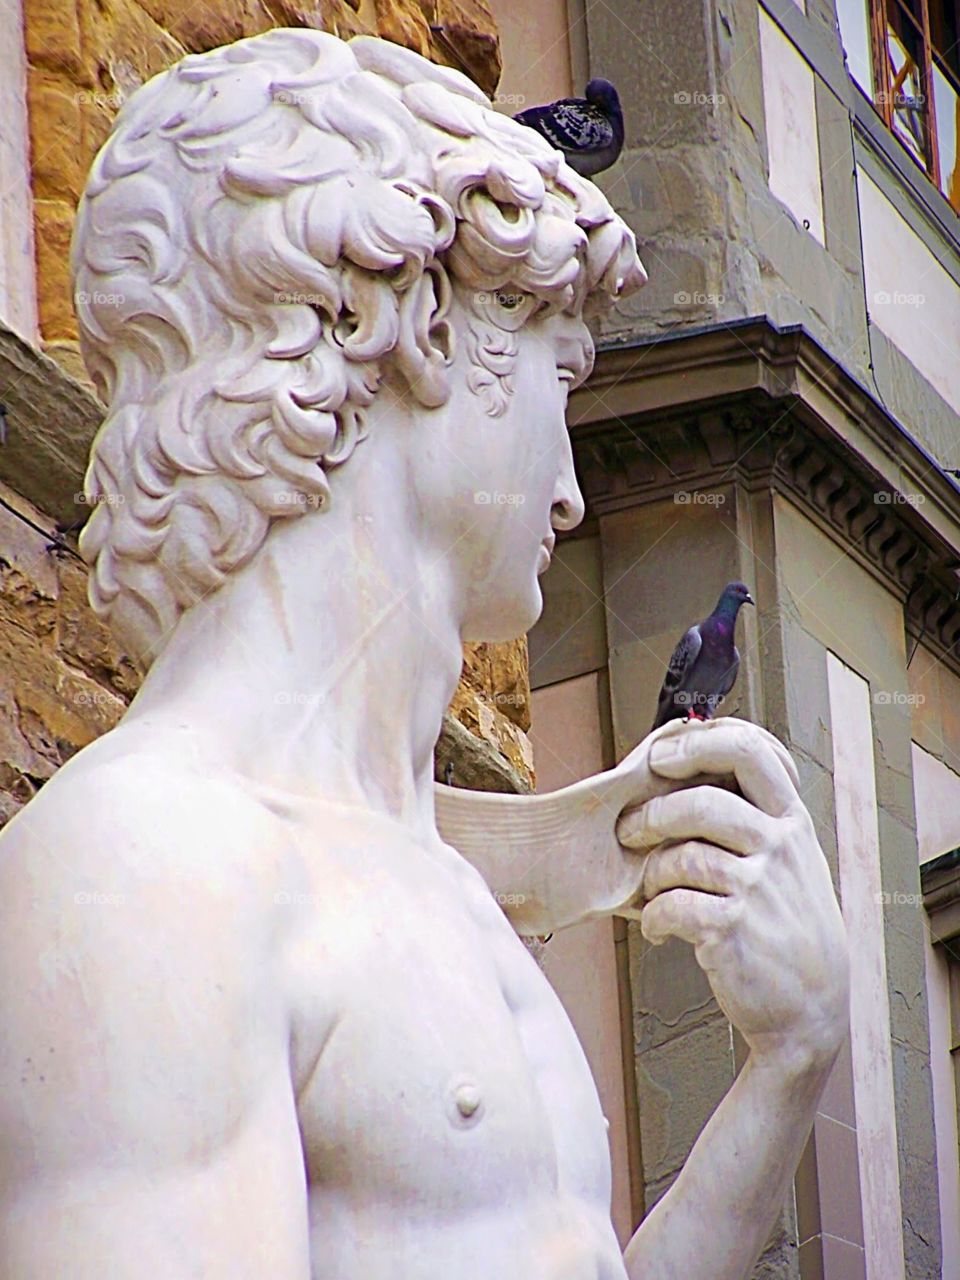 Sculpture of Michelangelo’s David with bird in hand